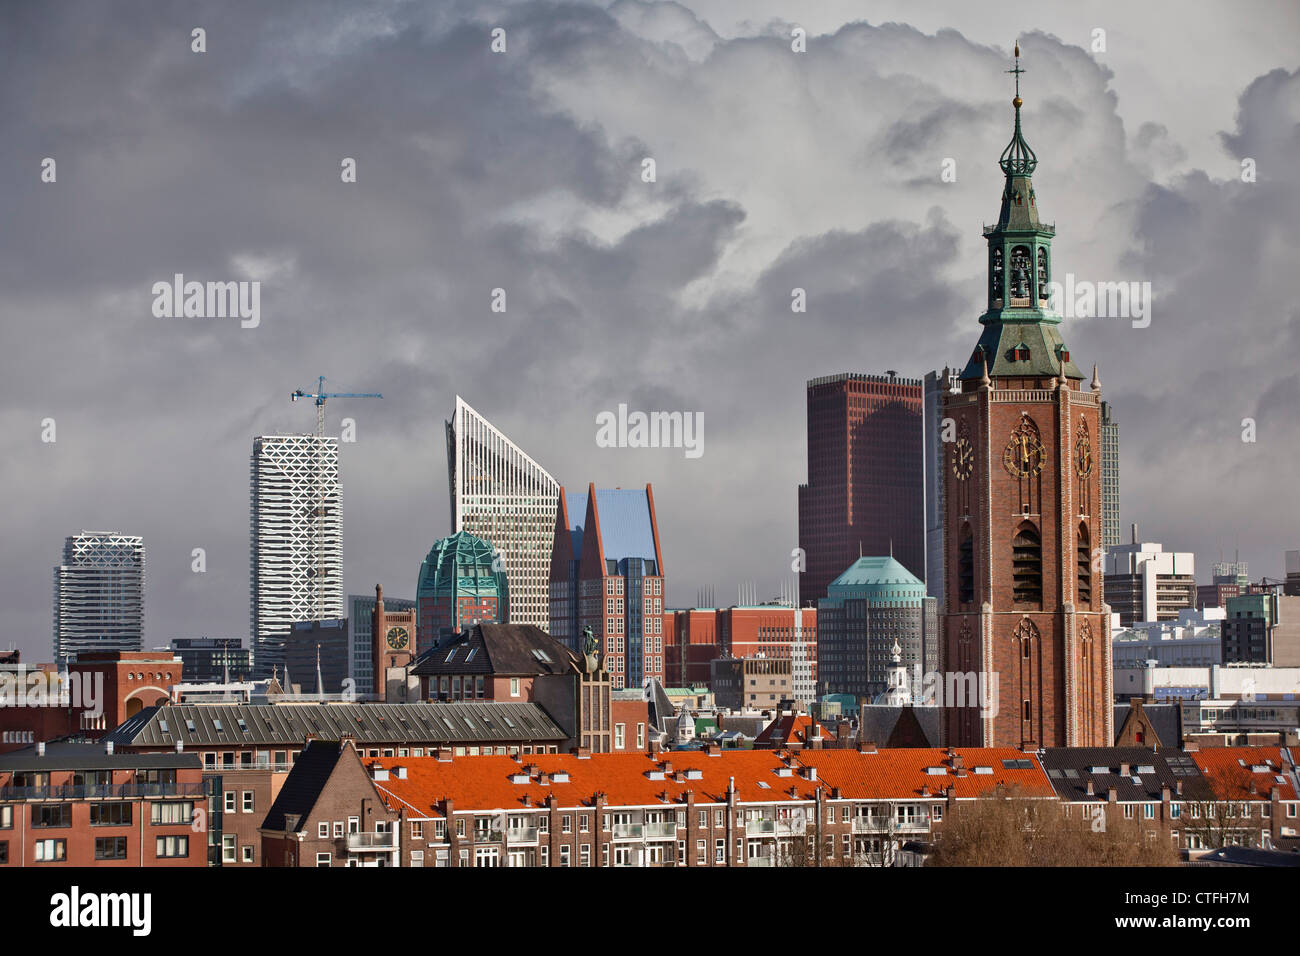 Les Pays Bas Den  Haag  La Haye  vue de l architecture  